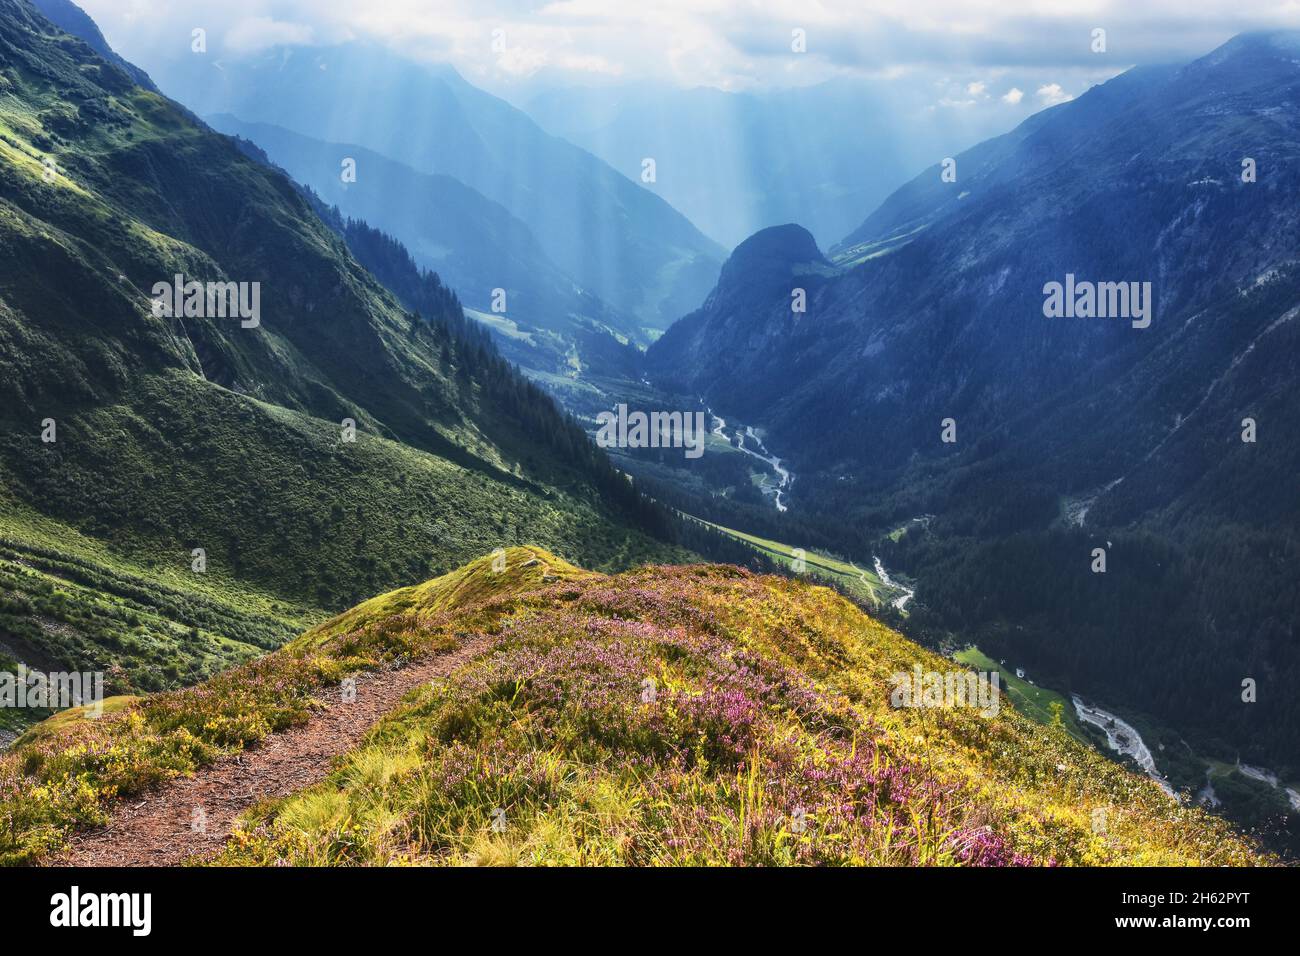 atmosfera suggestiva in un paesaggio alpino di montagna in estate. raggi del sole si infrangono attraverso le nuvole. maderanertal,glarus alps,uri,svizzera,europa Foto Stock